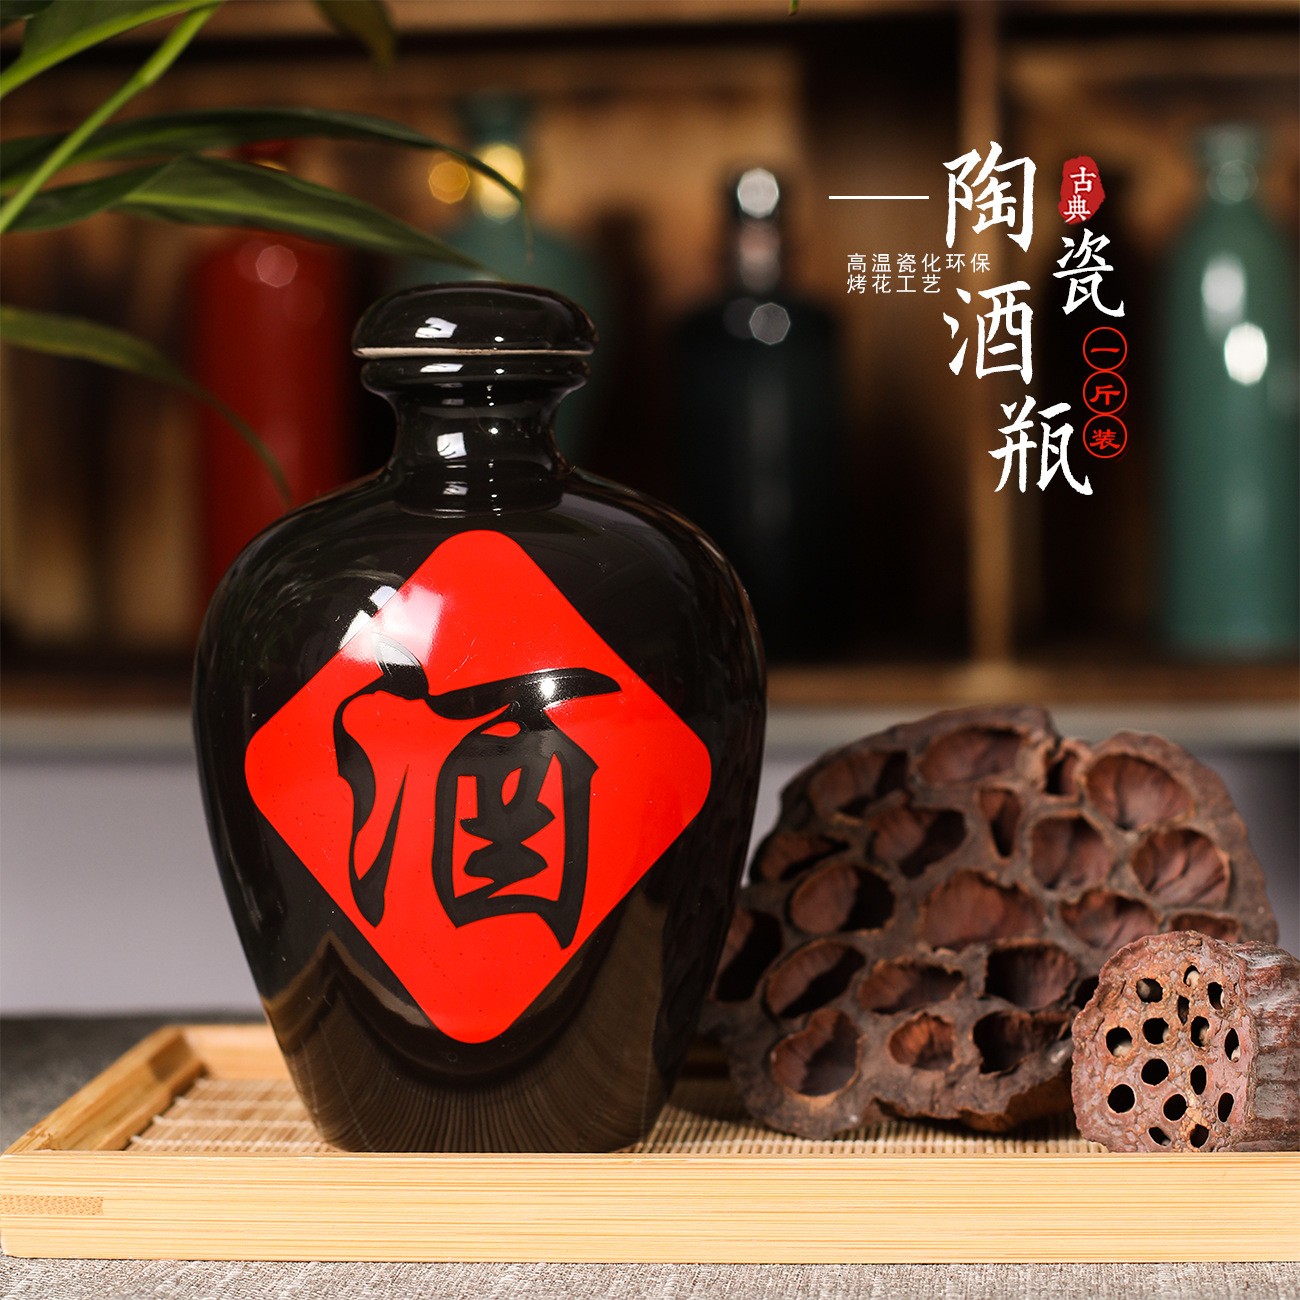 亮黑陶瓷酒瓶3斤装1500ml陶瓷酒瓶土陶酒坛子仿古空酒瓶子-阿里巴巴